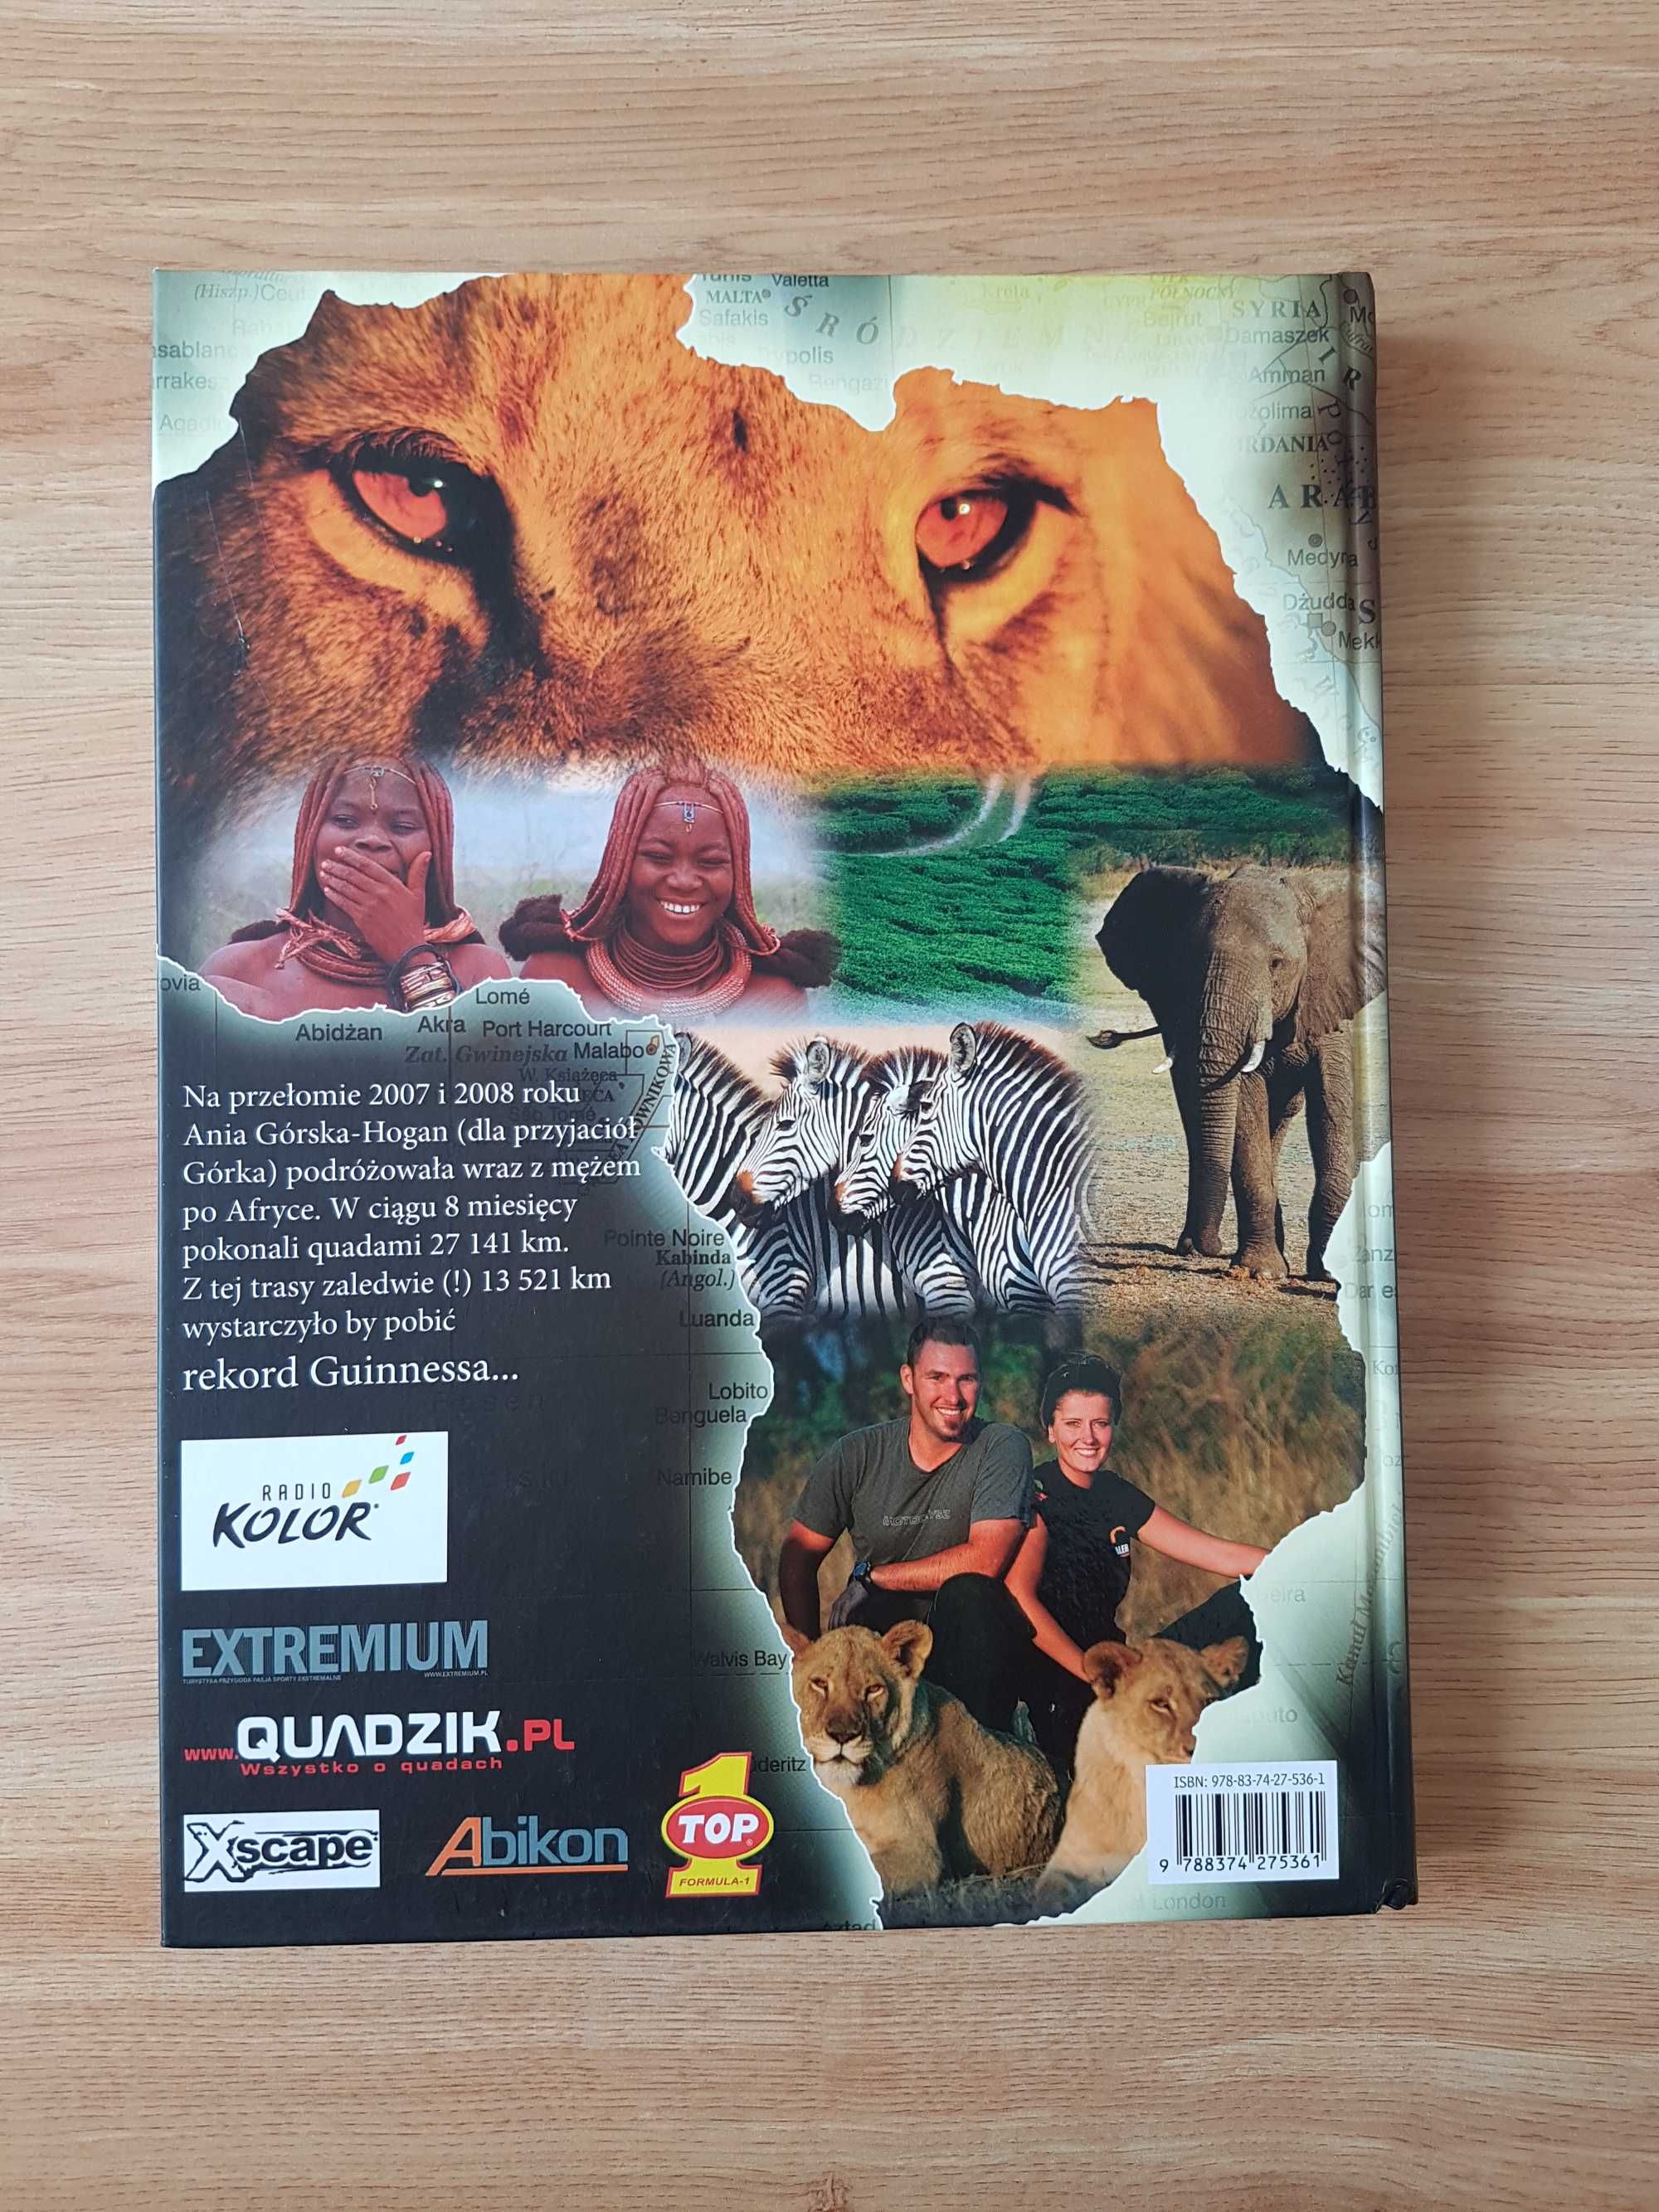 Książka Afryka Quadem, po przygodę i rekord Guinnessa